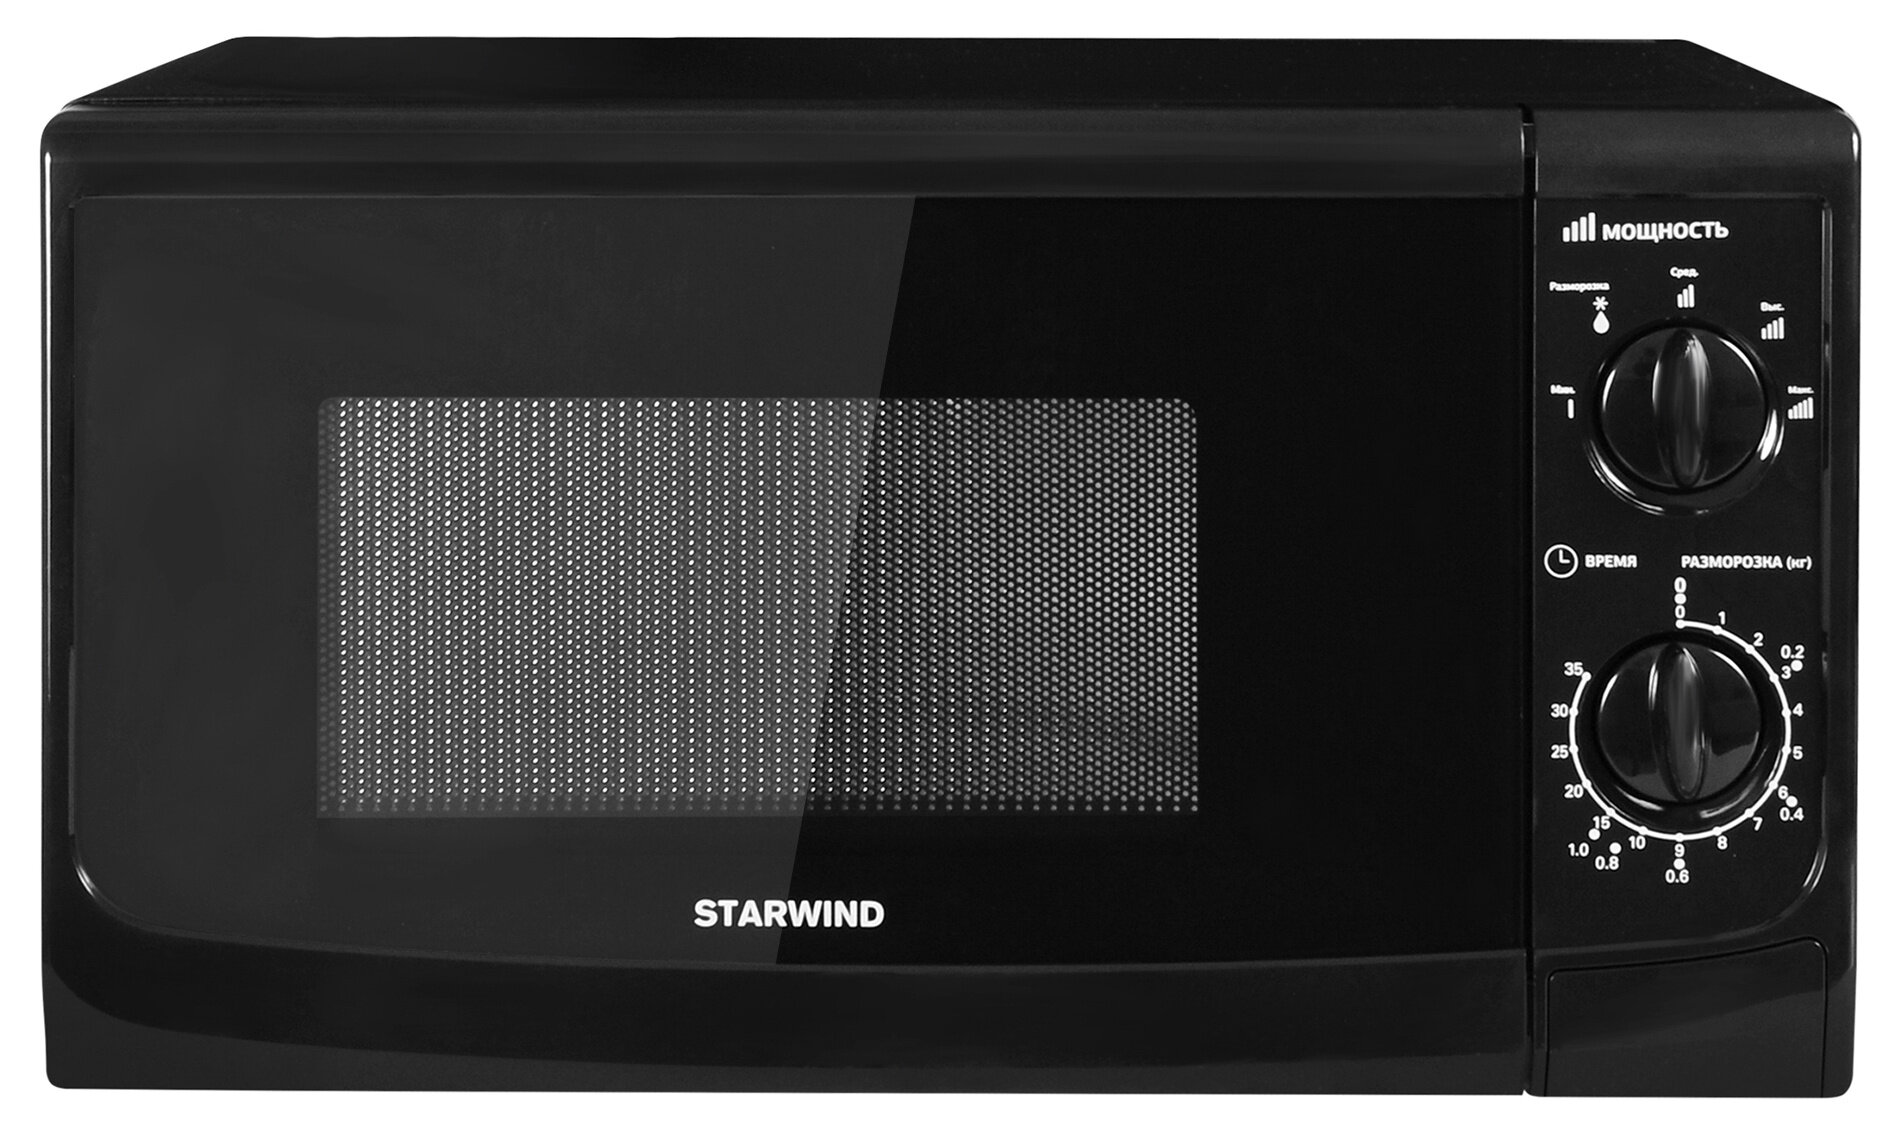 Микроволновая печь STARWIND SWM5720, 700Вт, 20л, черный